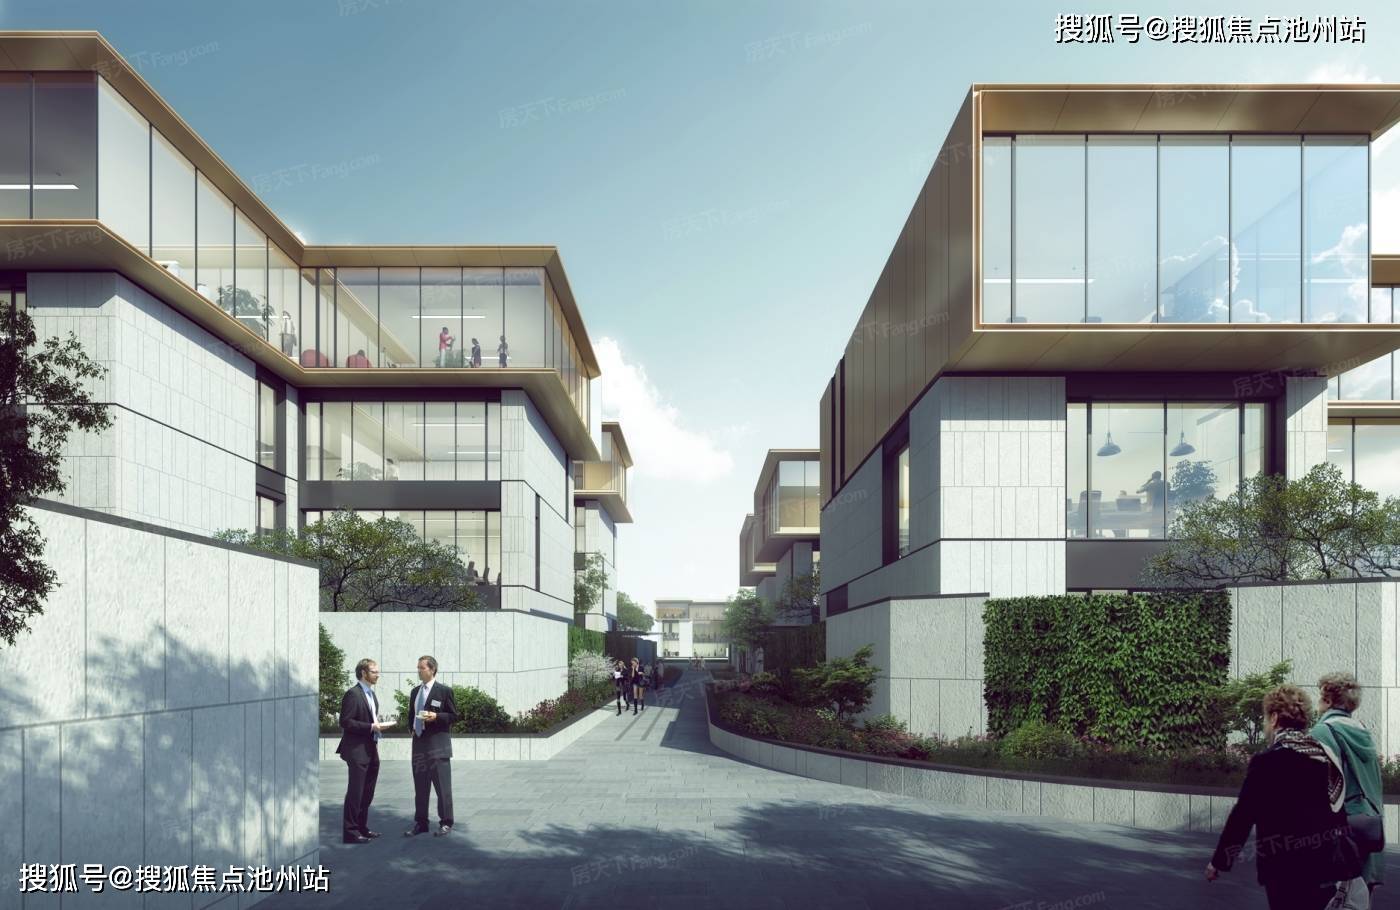 西溪印:杭州西湖区罕见的低密度纯粹独栋办公楼,户户私享独立花园,带